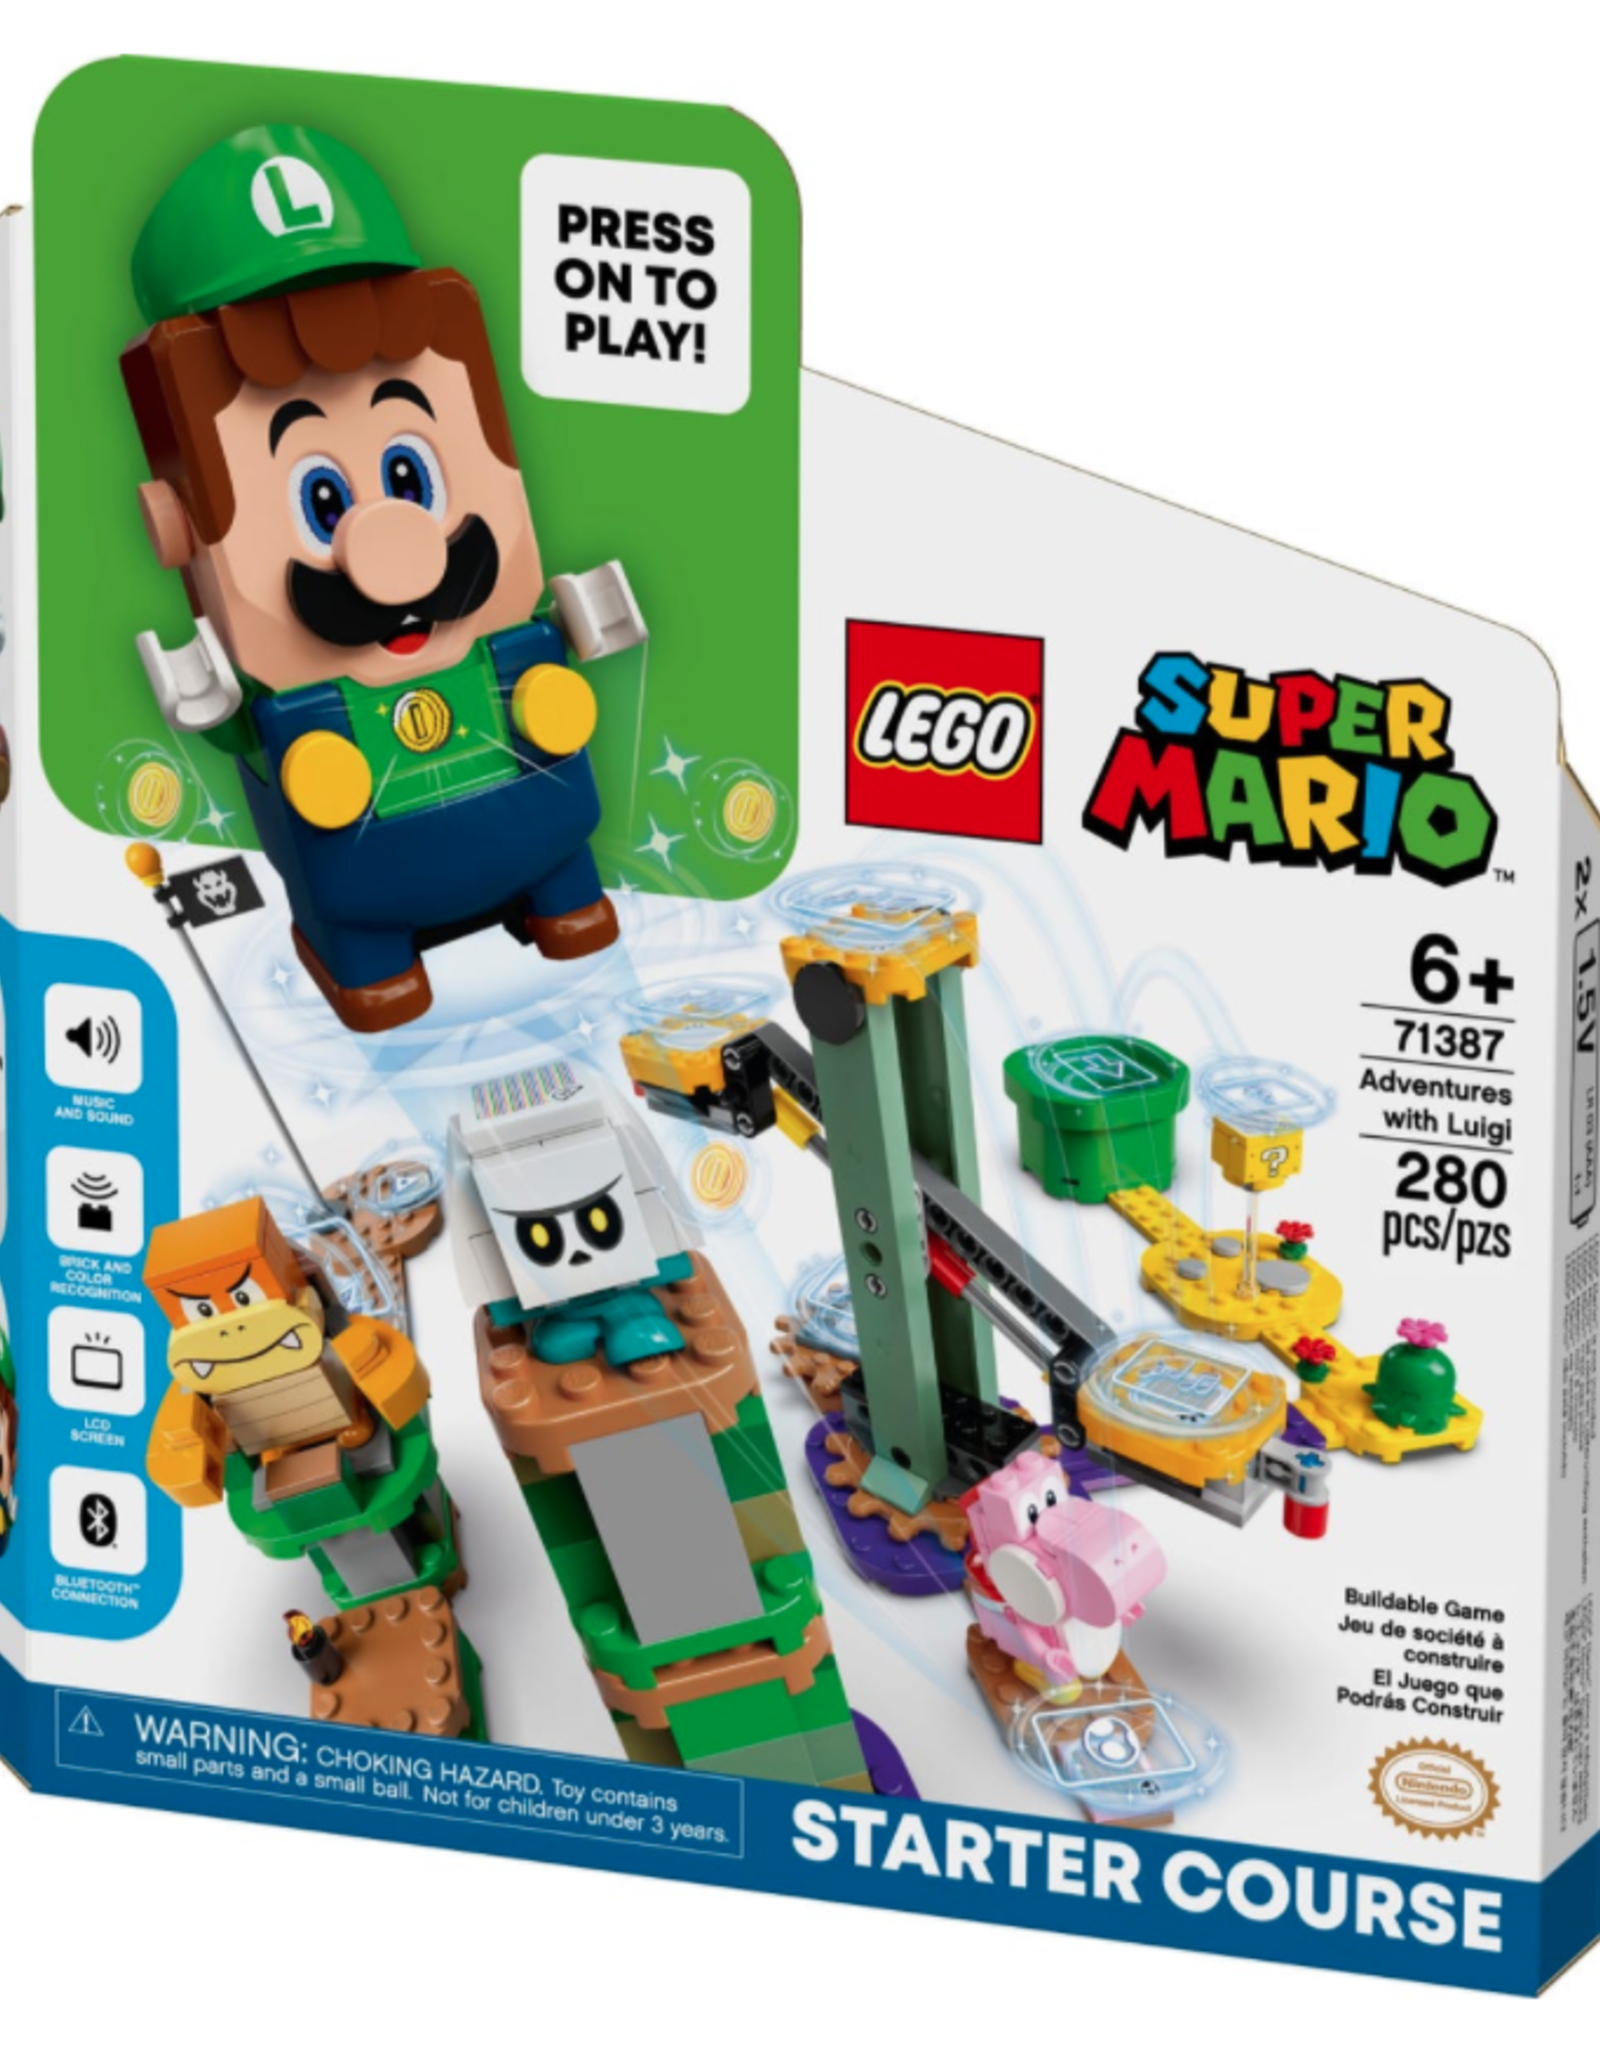 LEGO Lego Mario Adventures with Luigi Starter Course